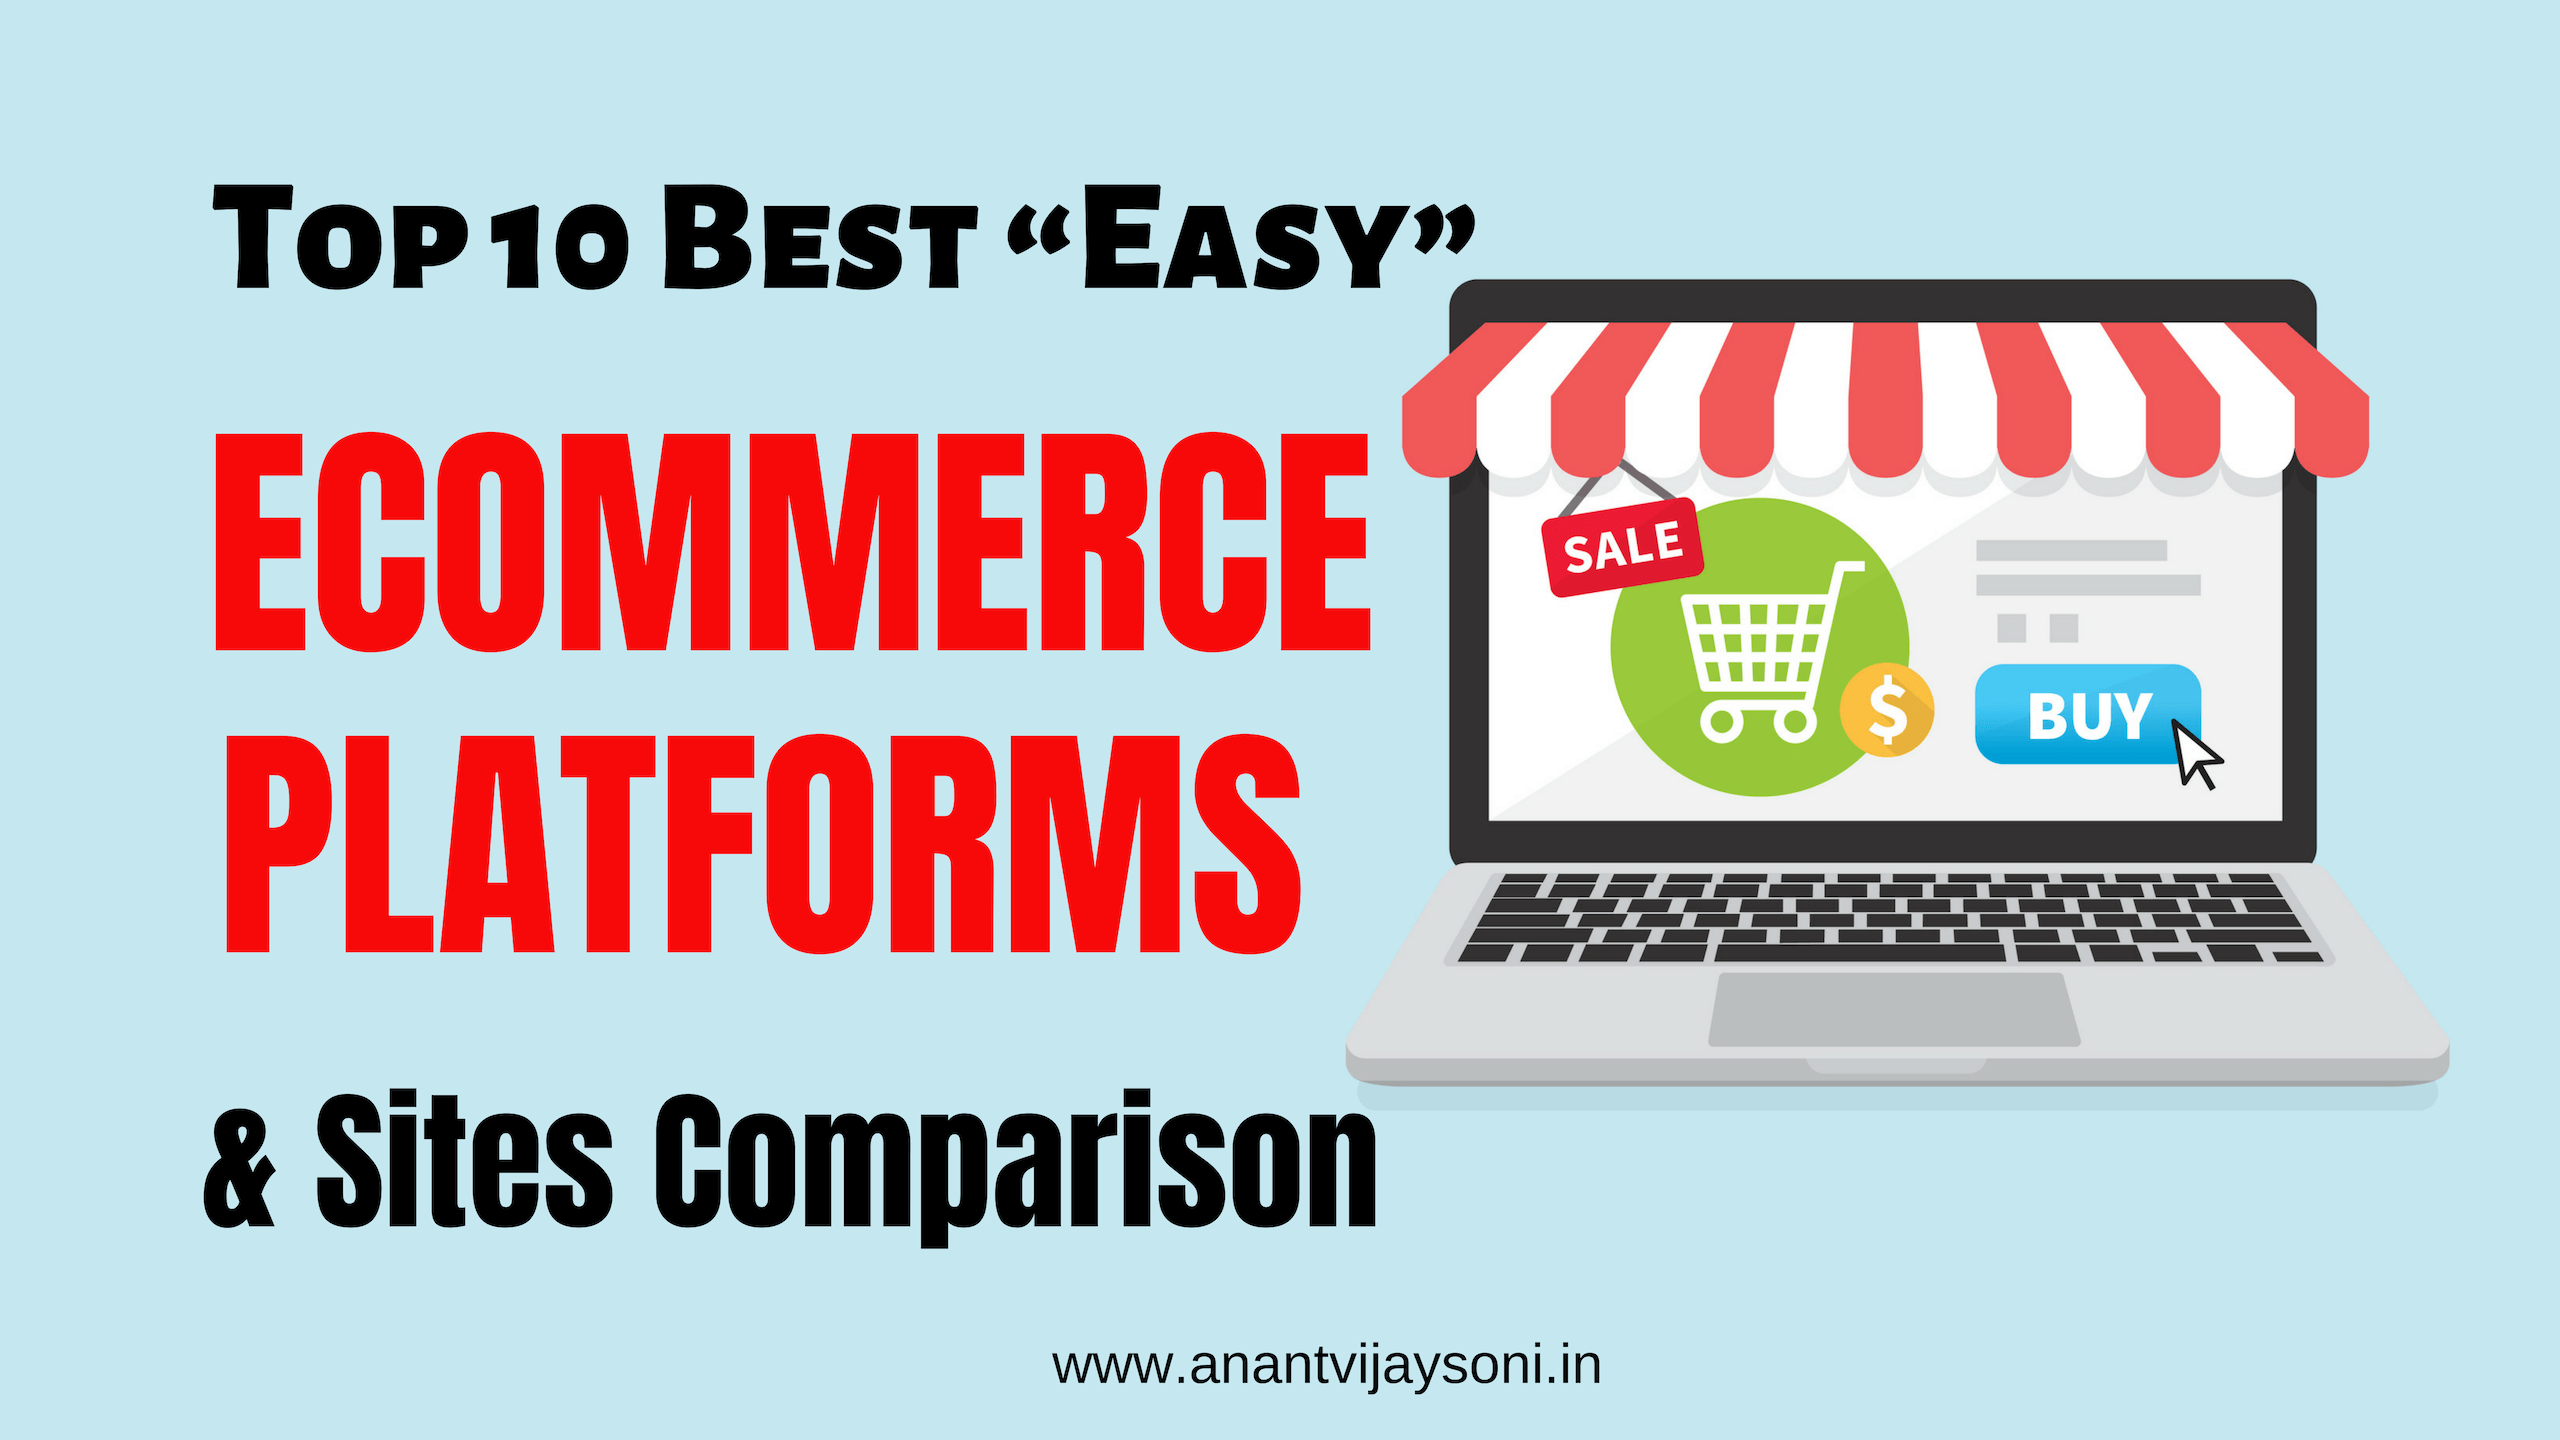 Top 10 Best “Easy” eCommerce Platforms & Sites Comparison (2019)